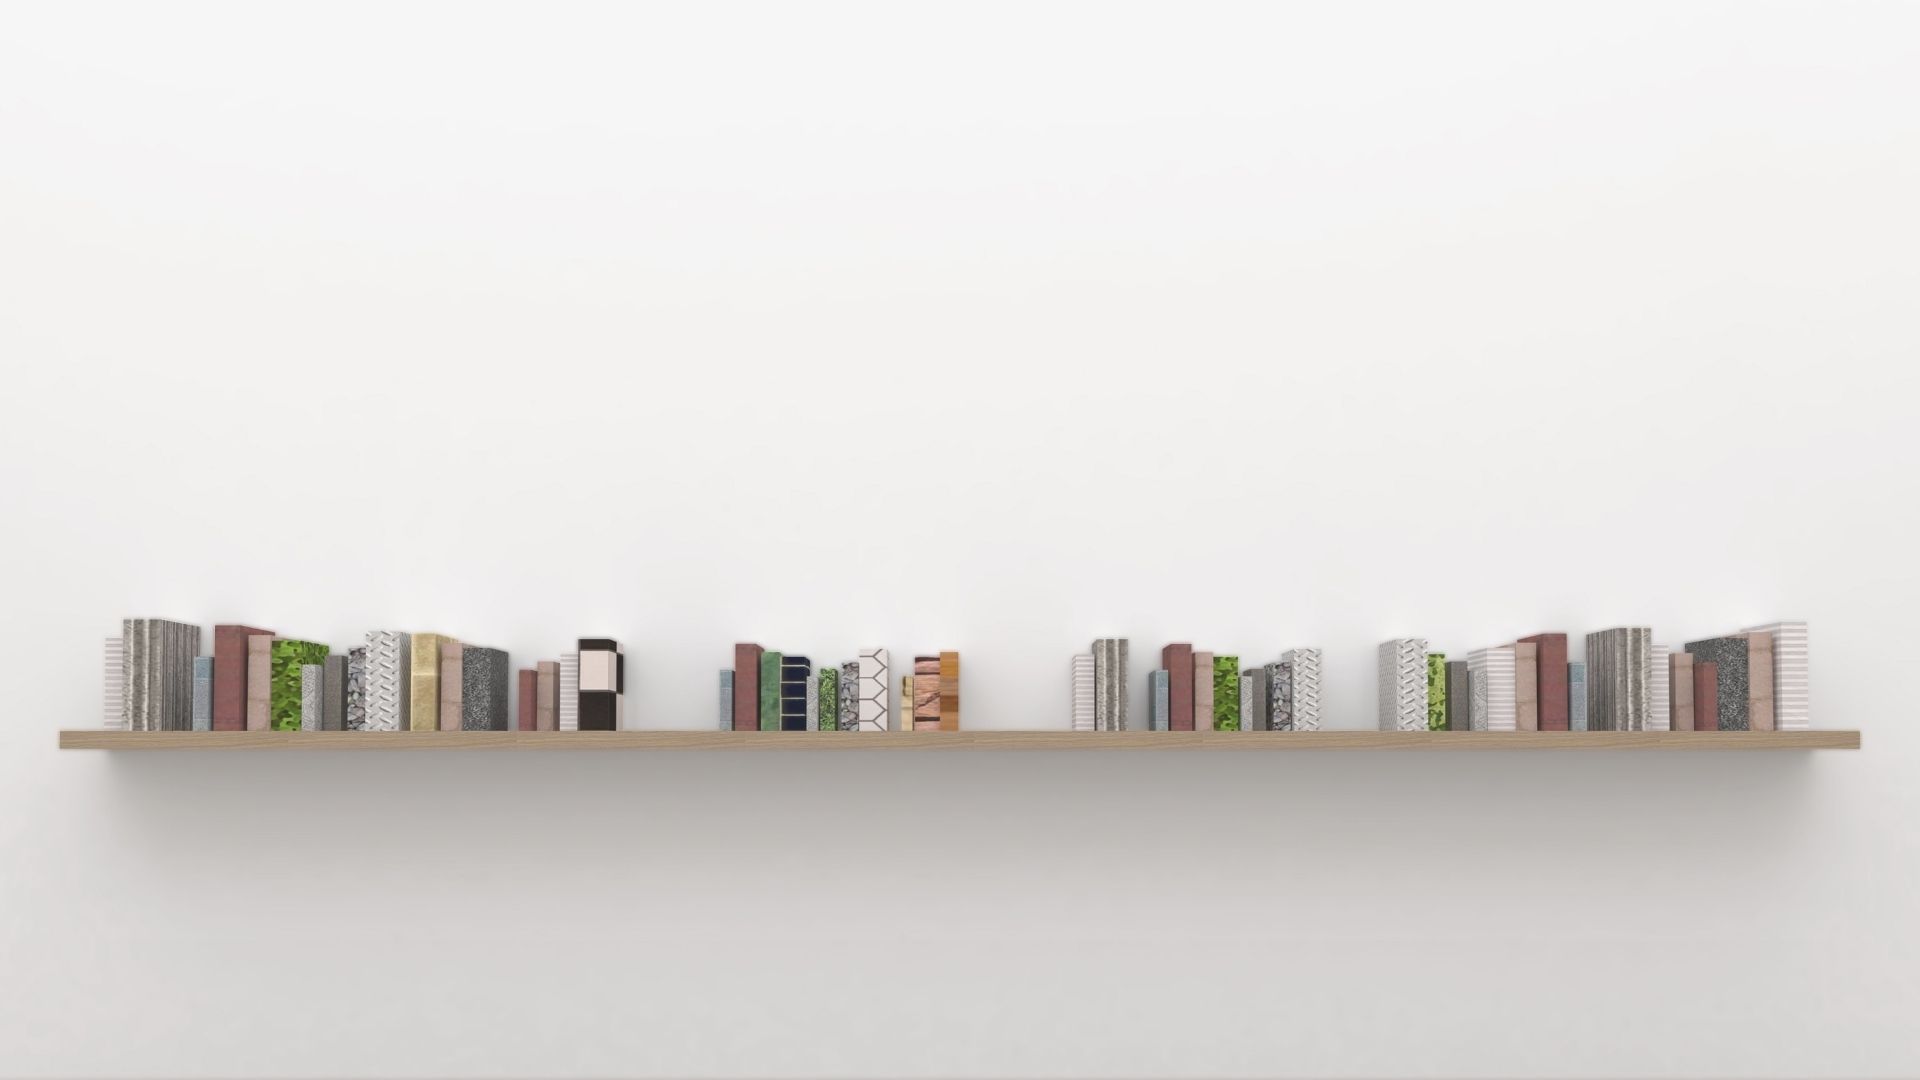 横長の本棚とカラフルな本